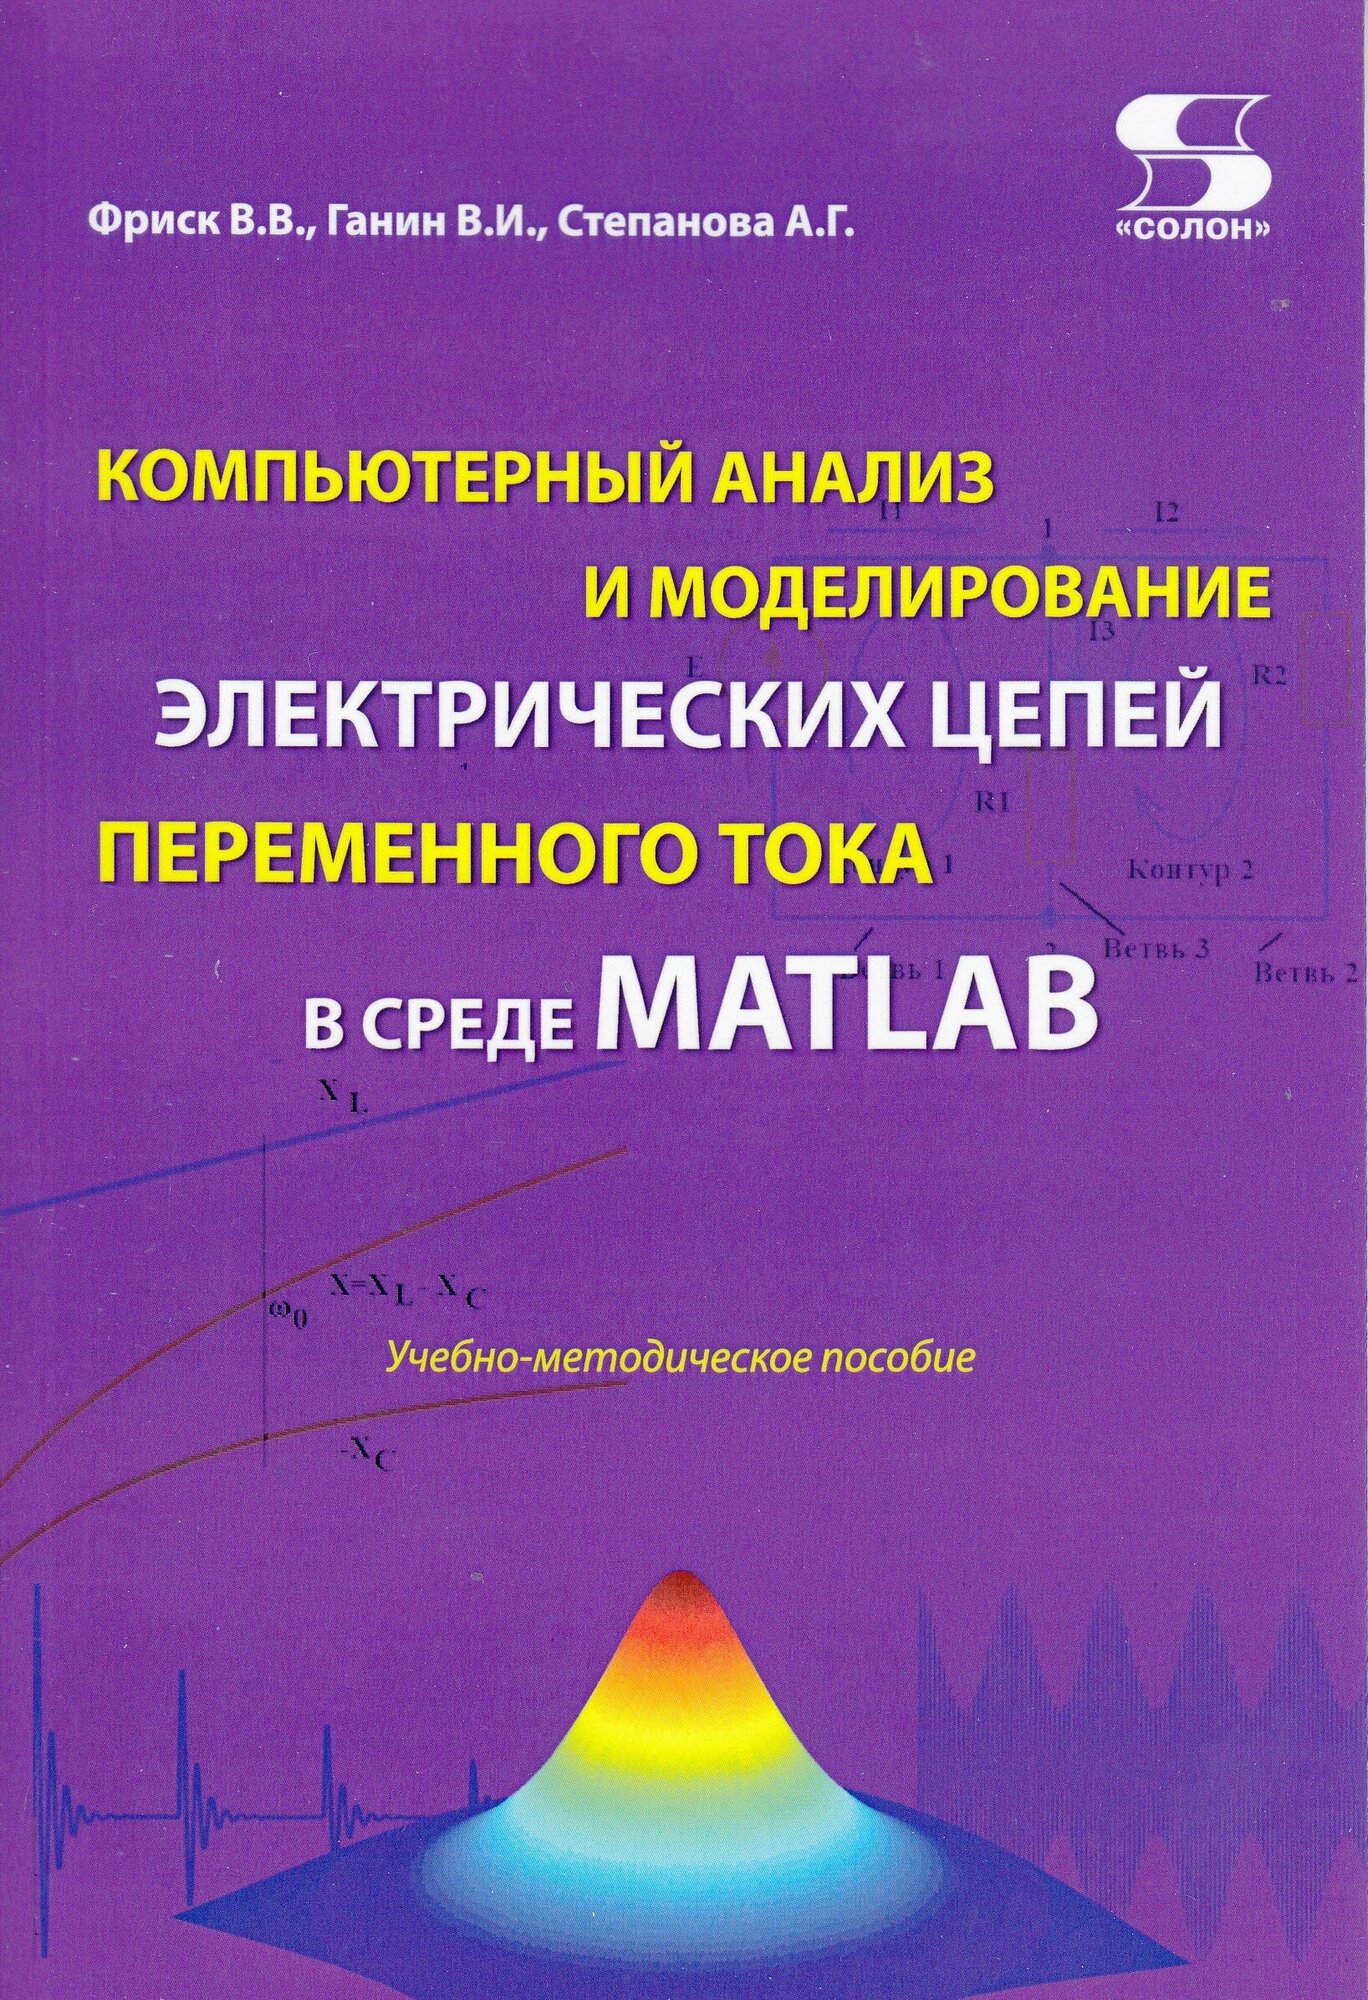 Компьютерный анализ и моделирование электрических цепей переменного тока в среде MATLAB, Фриск В. В.